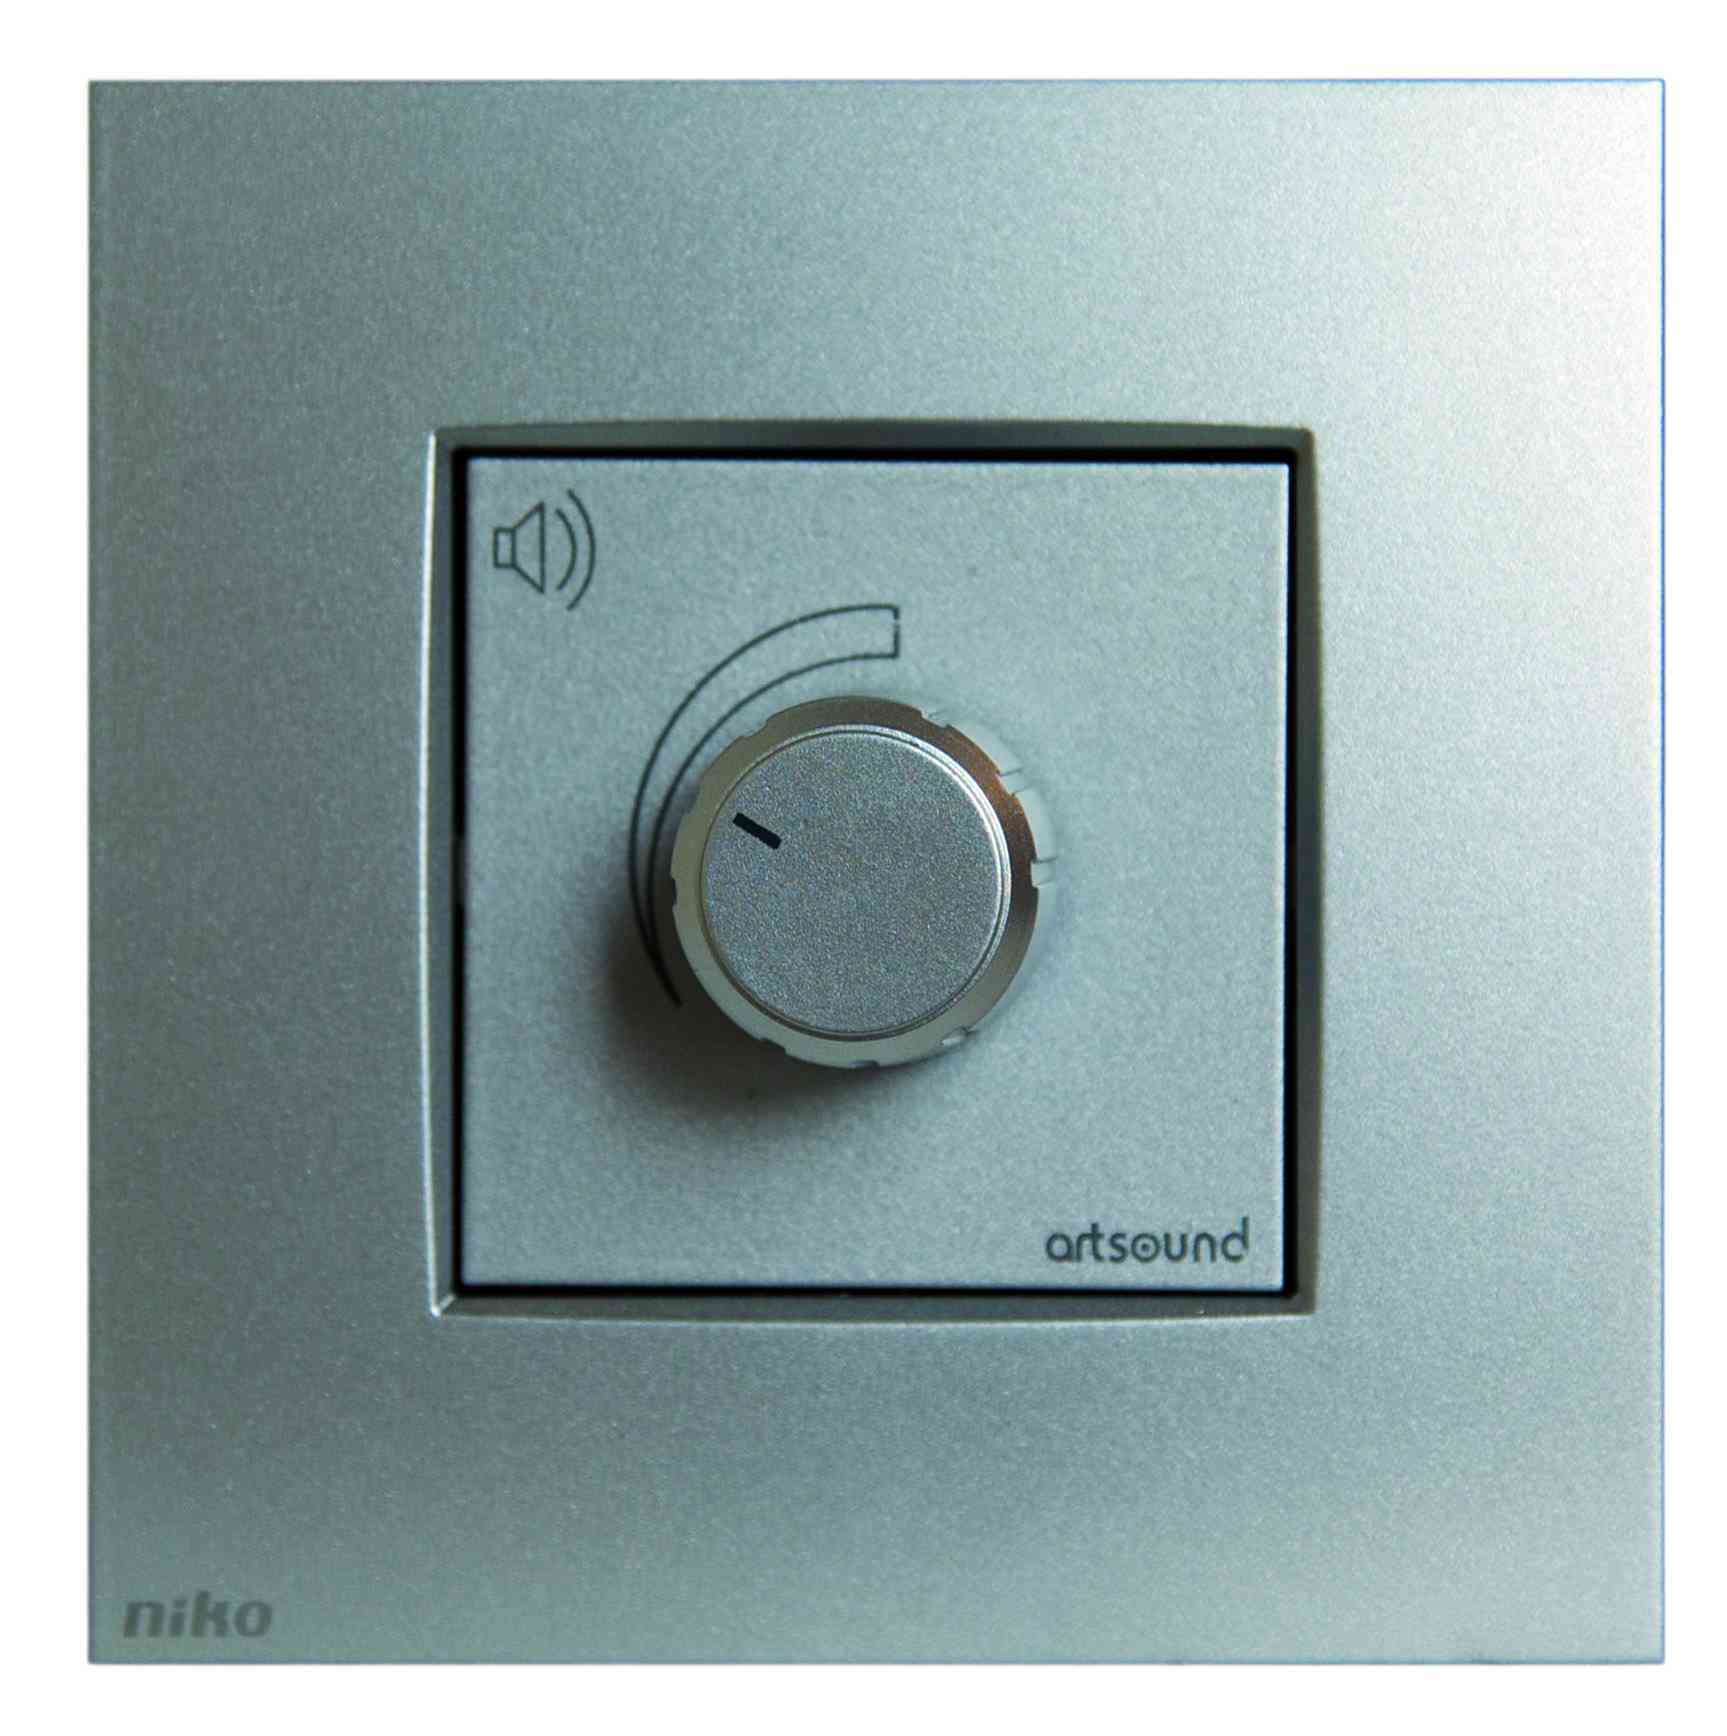 N-VOLST-121, stereo inwall volume control, niko, silver